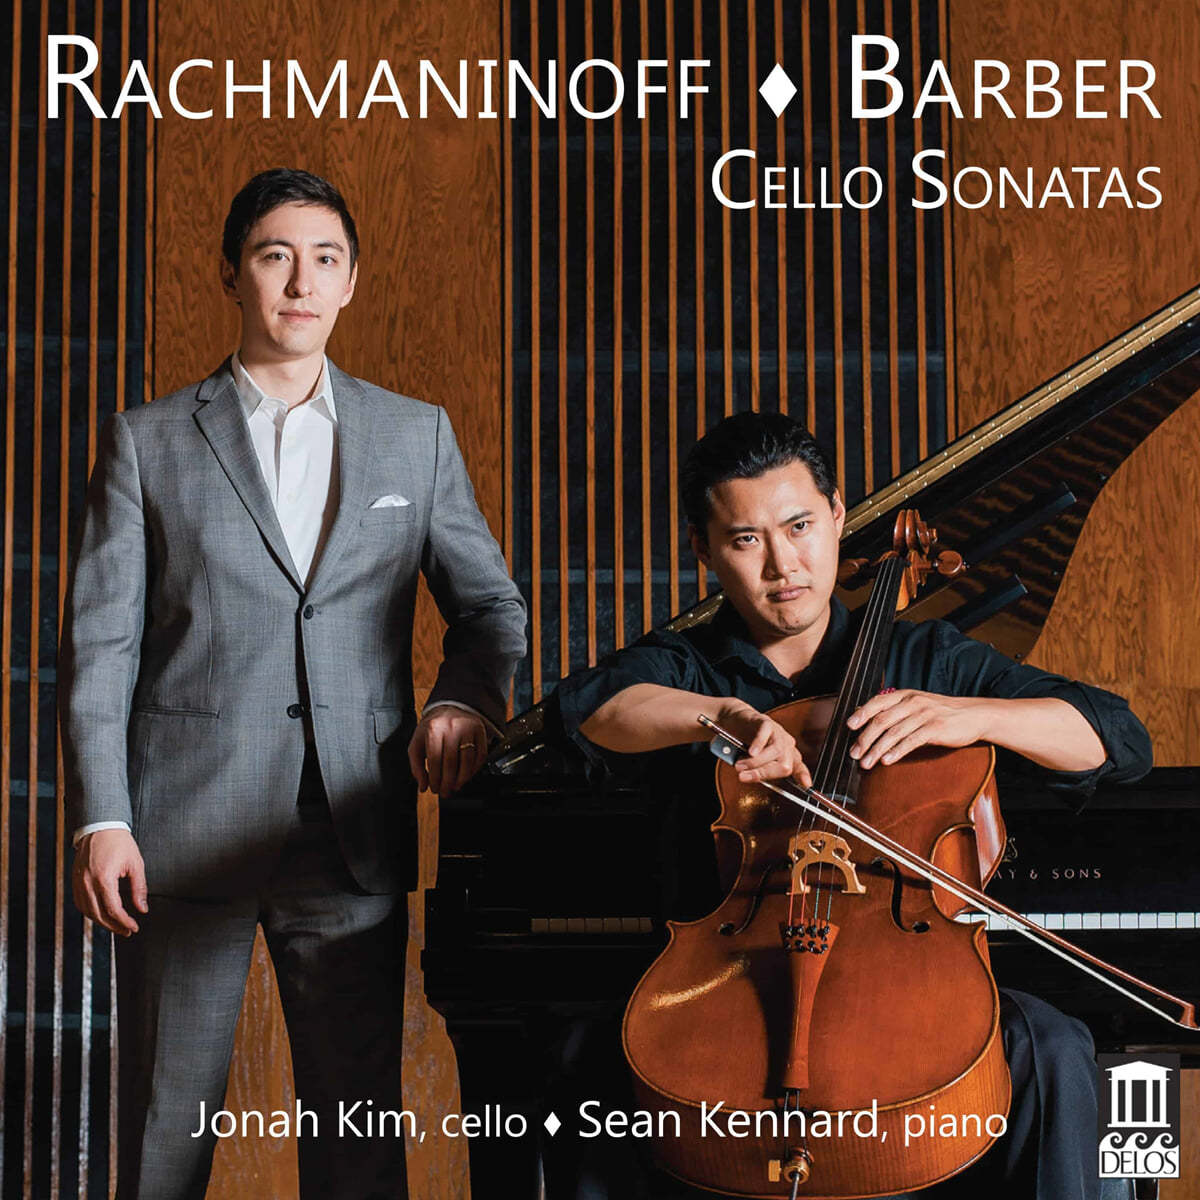 요나 김 - 라흐마니노프 / 바버: 첼로 소나타 (Rachmaninov: Cello Sonata Op.19 / Barber: Cello Sonata Op.6) 